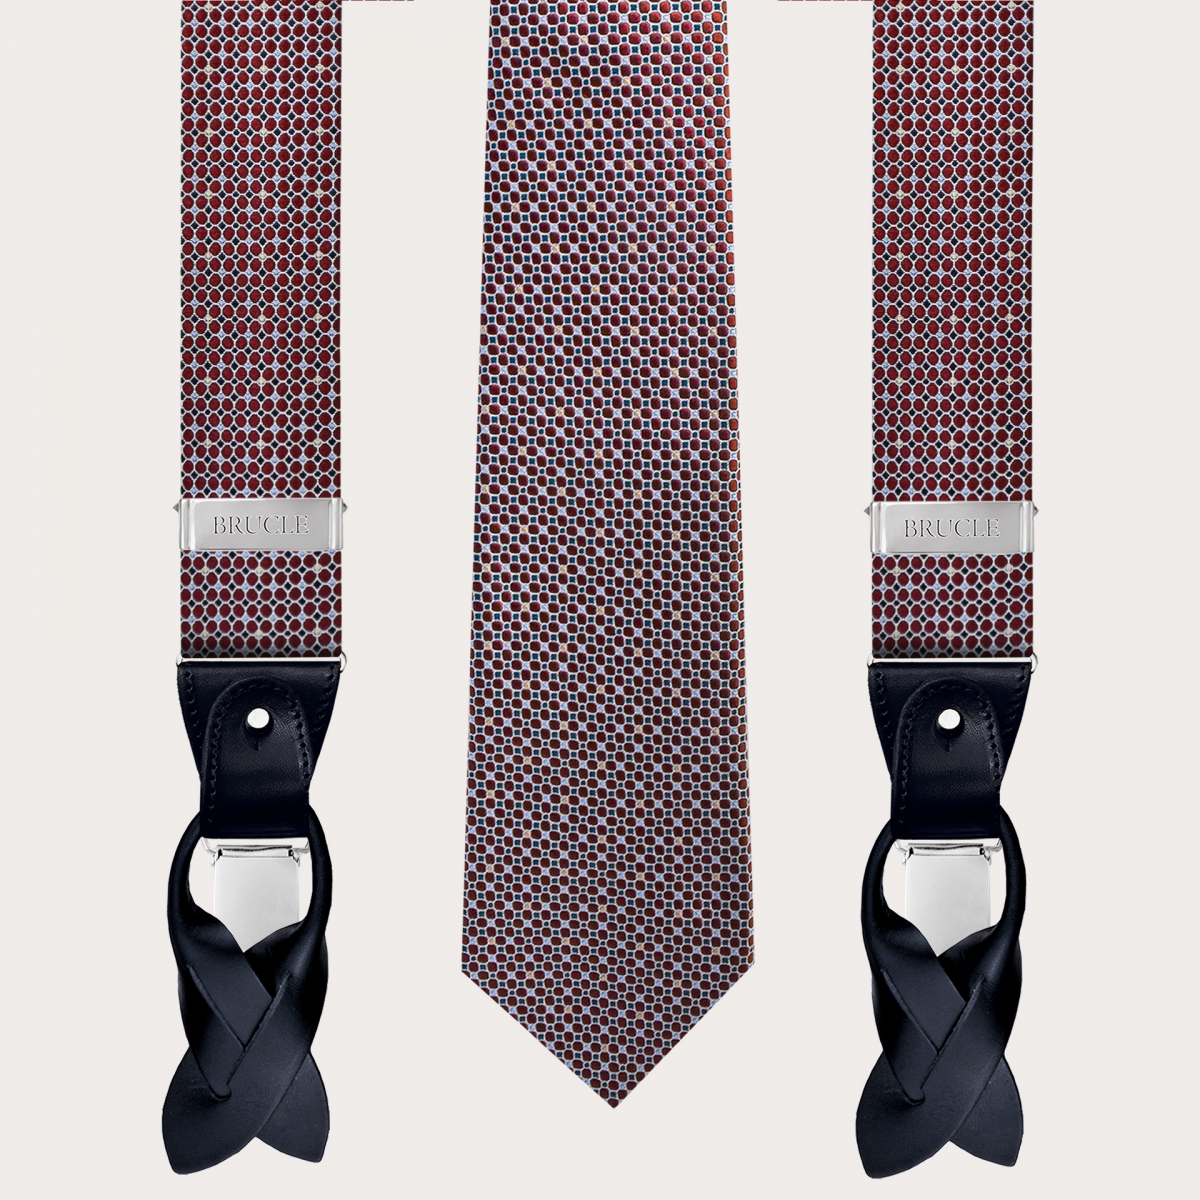 Bretelle e cravatta coordinate in seta, fantasia astratta a pois bordeaux con accenti azzurri